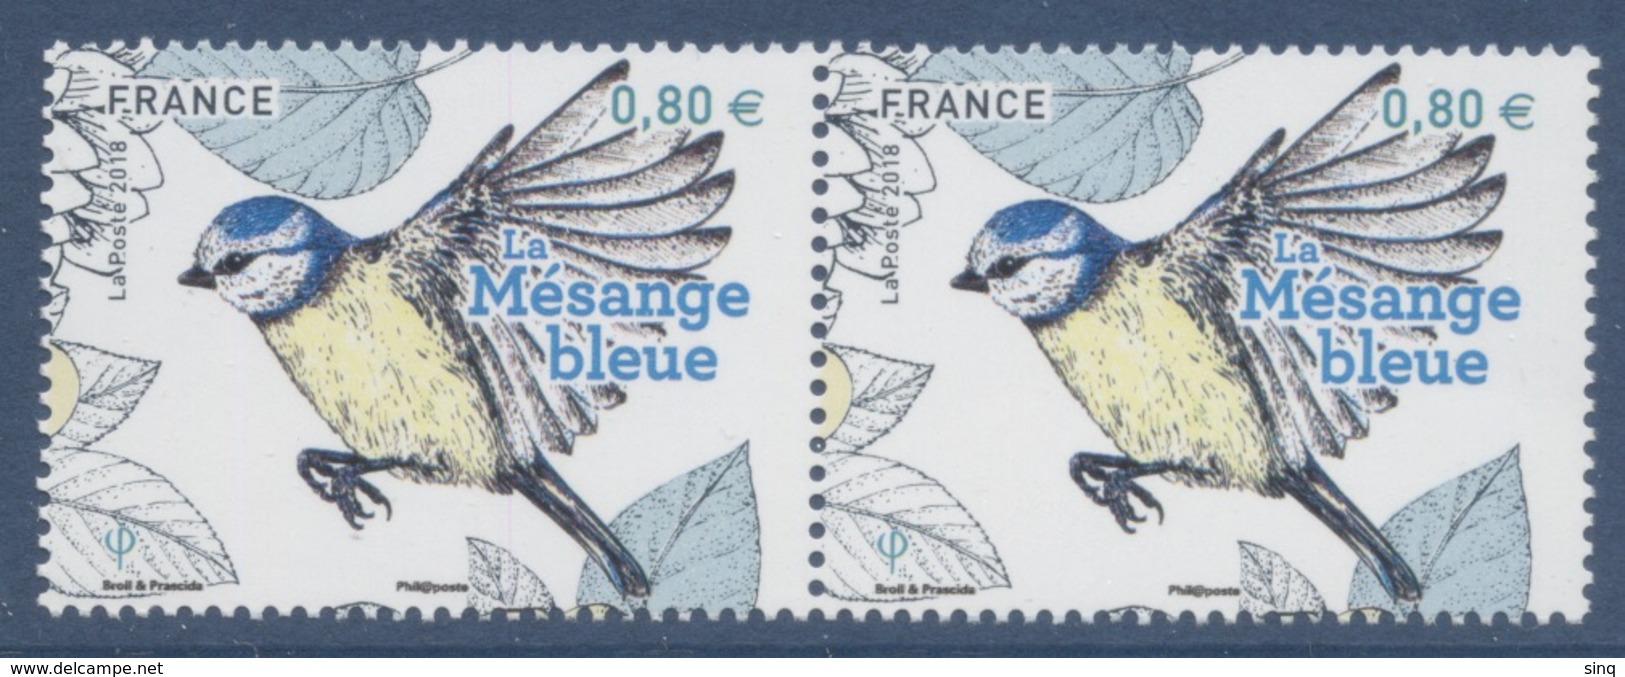 N° 5238 Mésange Bleue Faciale 0,80 € X 2 - Unused Stamps